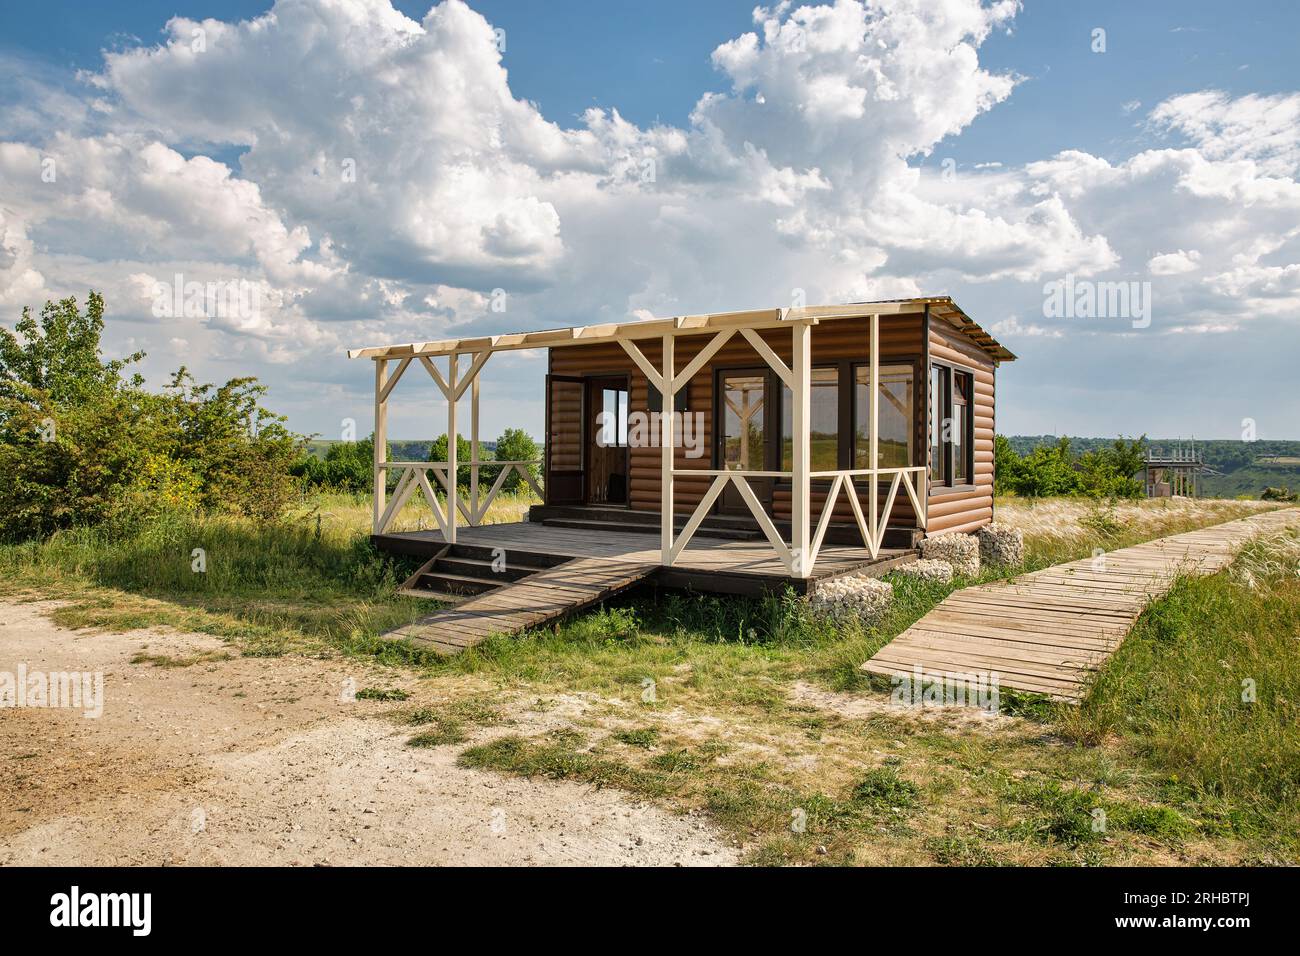 Petite maison moderne en bois dans un champ clair wirh boardwalk en bois Banque D'Images